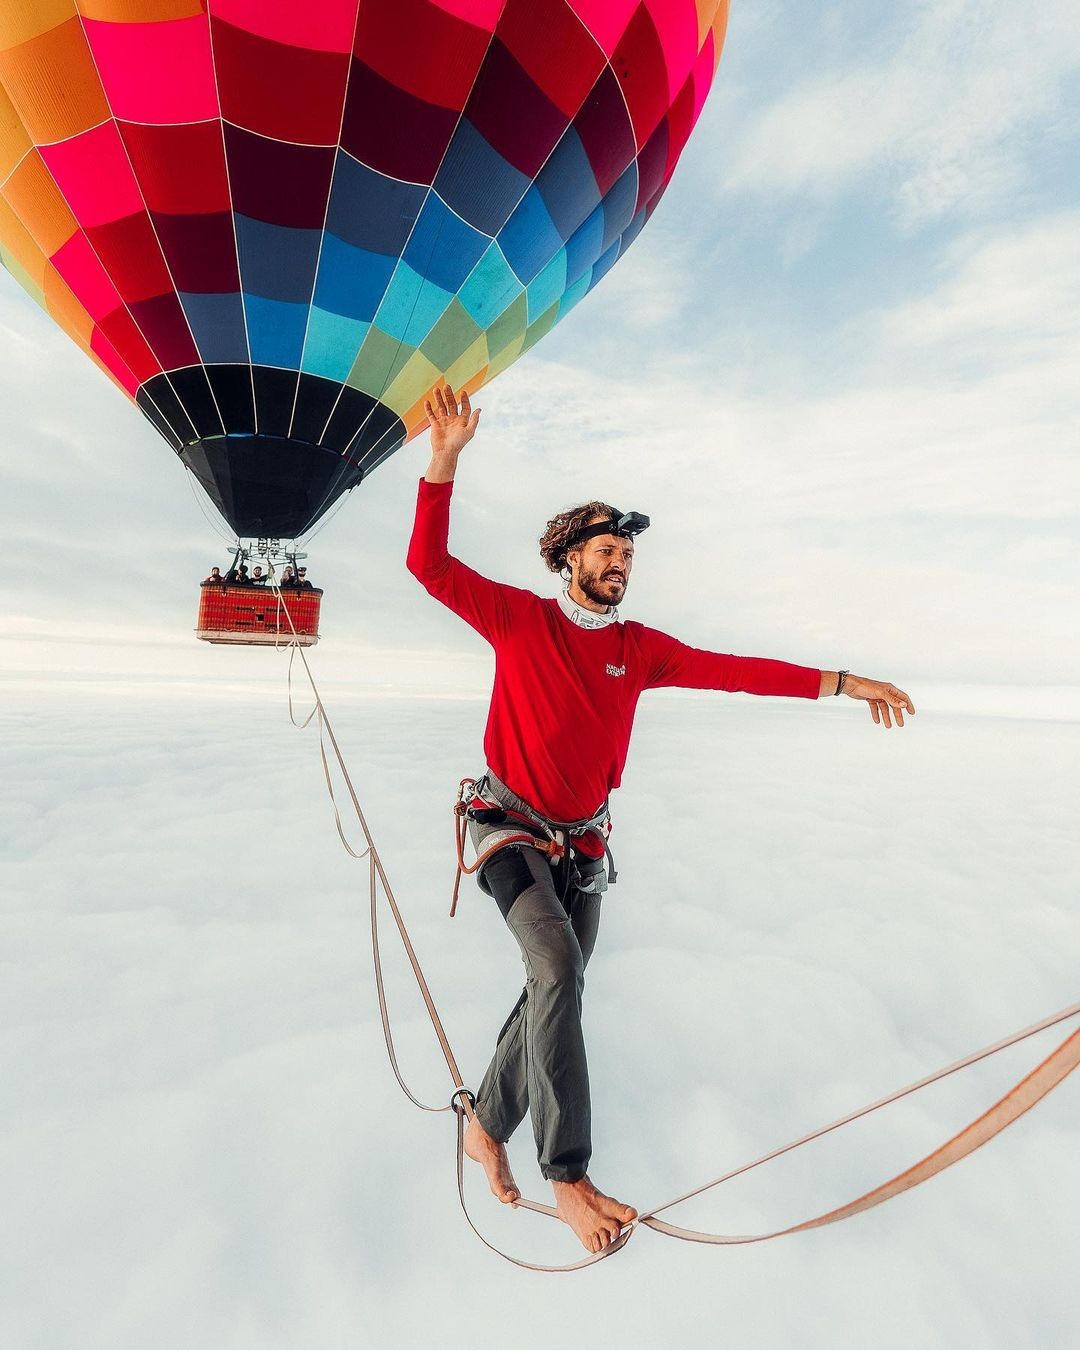 O brasileiro caminhou a distância de 18 metros entre dois balões de ar quente a uma altitude de 1.901 metros (Foto: Reprodução/Instagram)